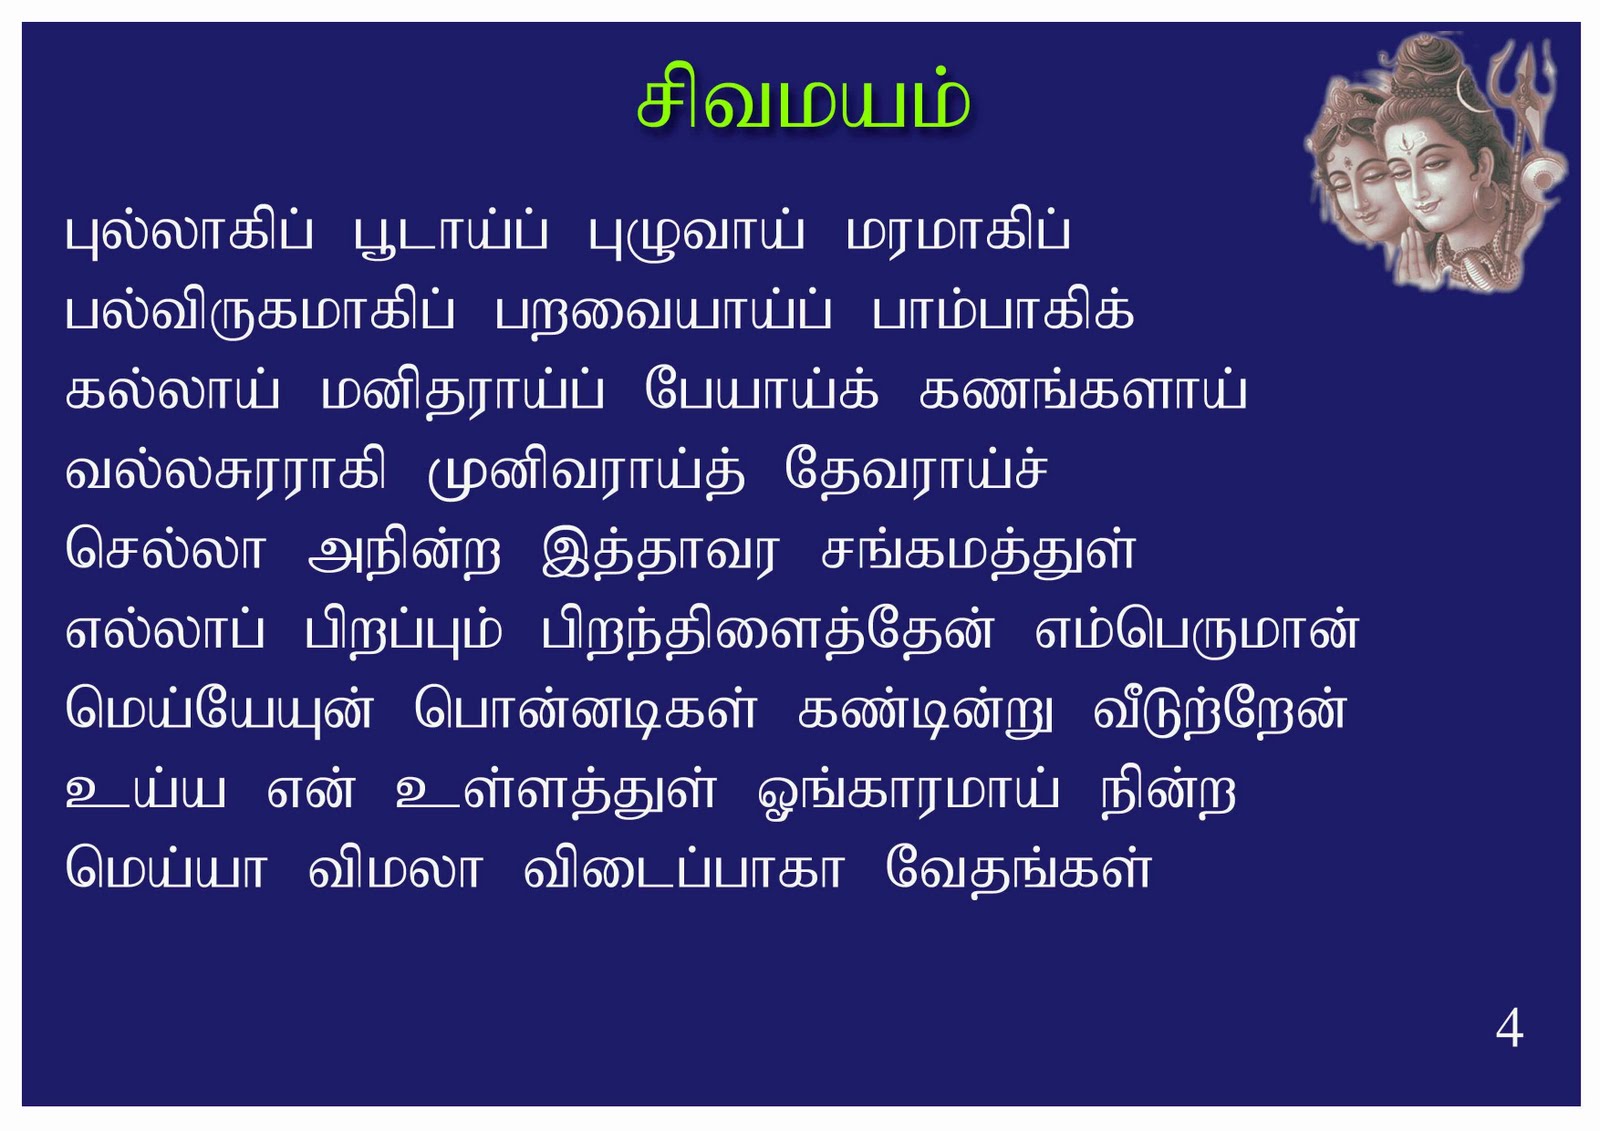 Thiruvasagam sivapuranam lyrics in tamil